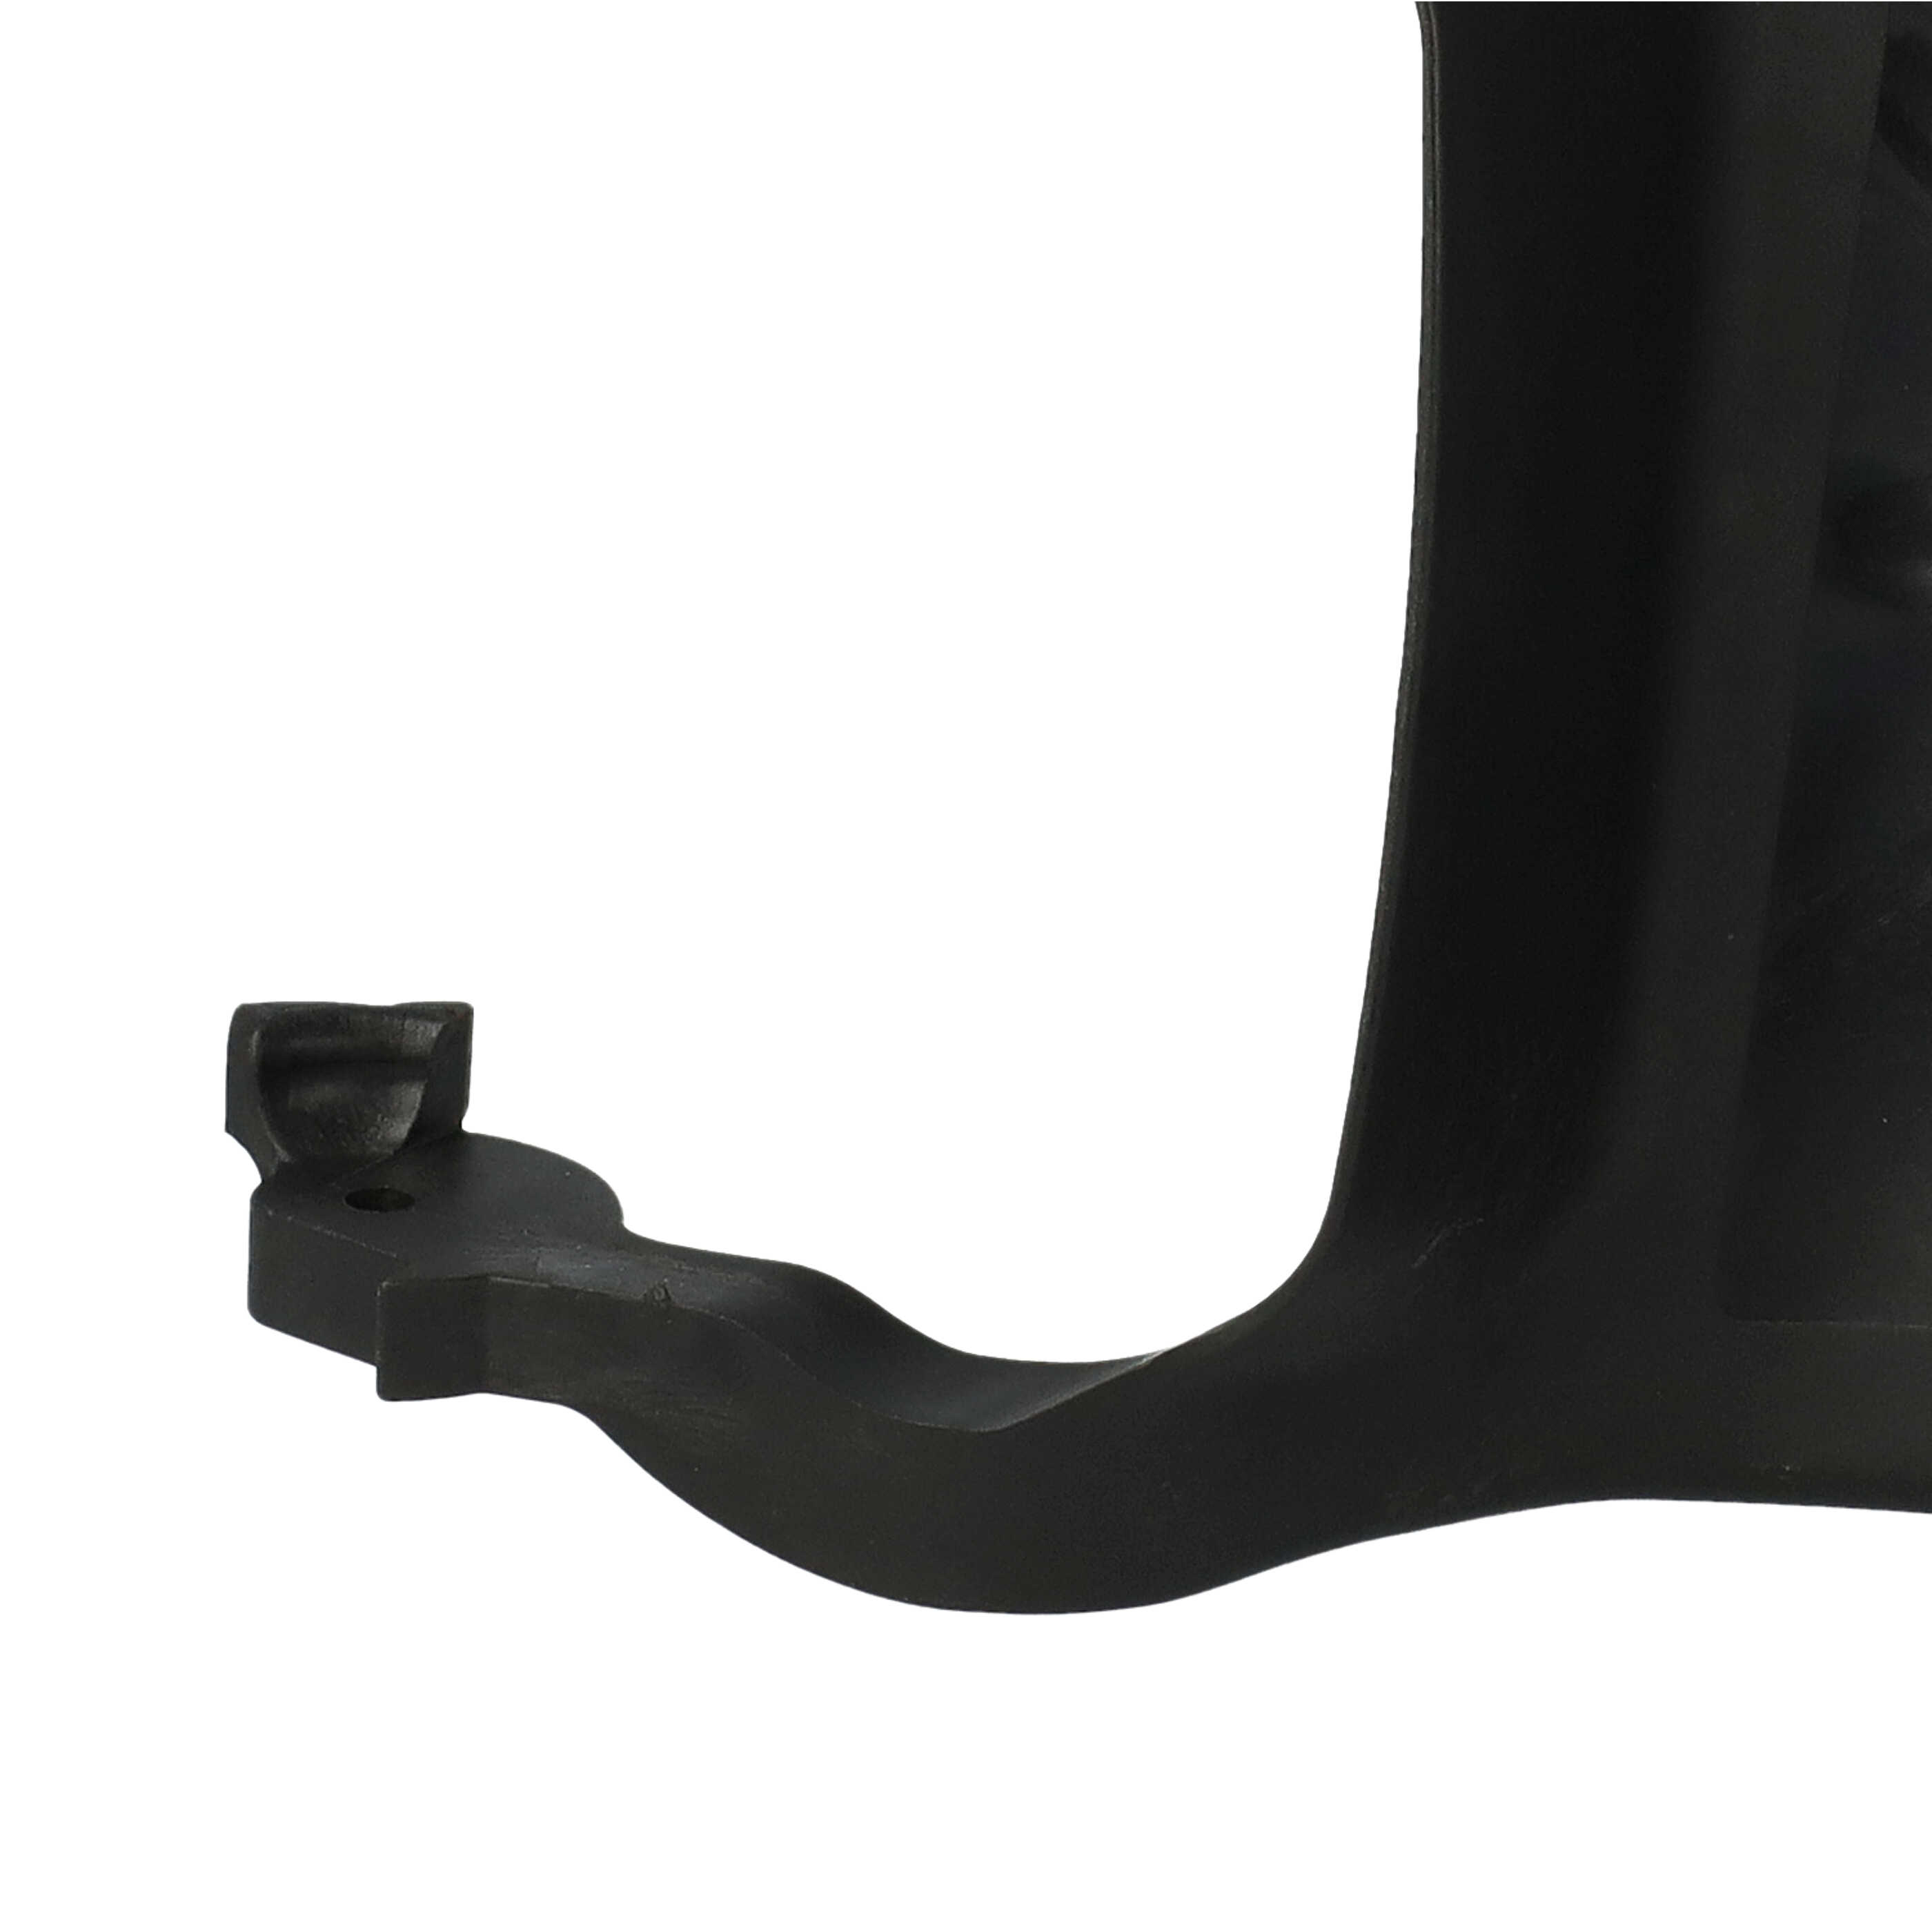 Protège-mains remplace Stihl 1143 792 9103 compatible avec Stihl tronçonneuse - 18,5 x 15,5 x 4 cm noir 